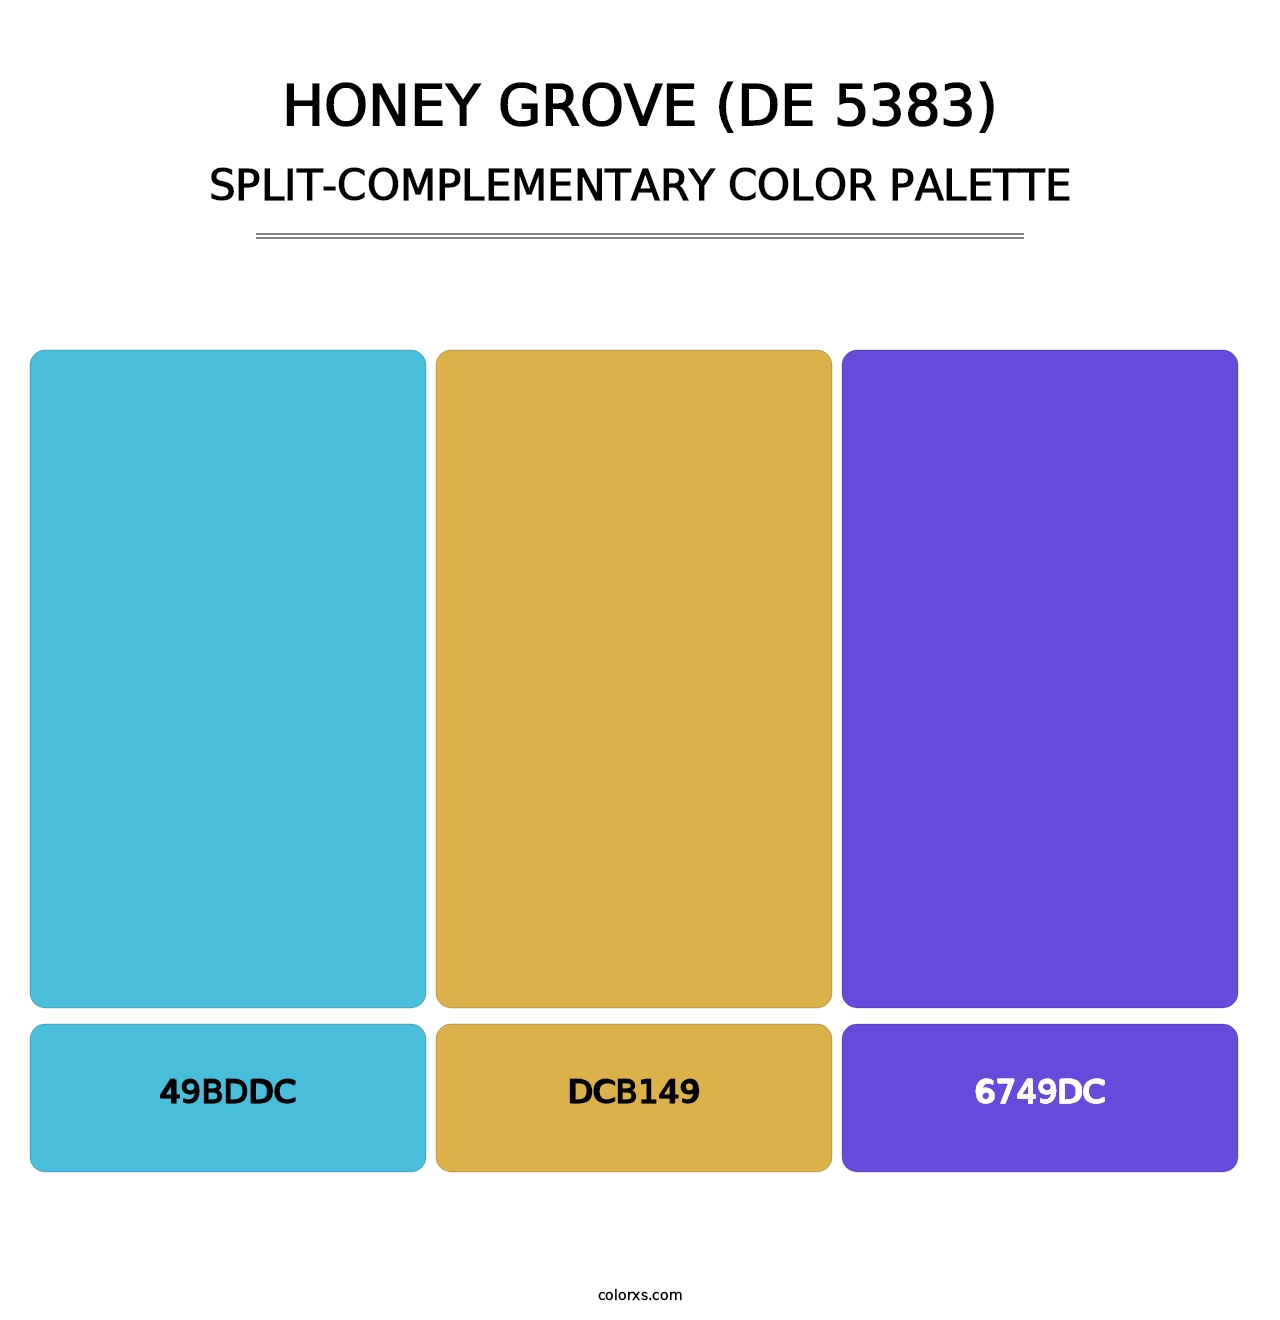 Honey Grove (DE 5383) - Split-Complementary Color Palette